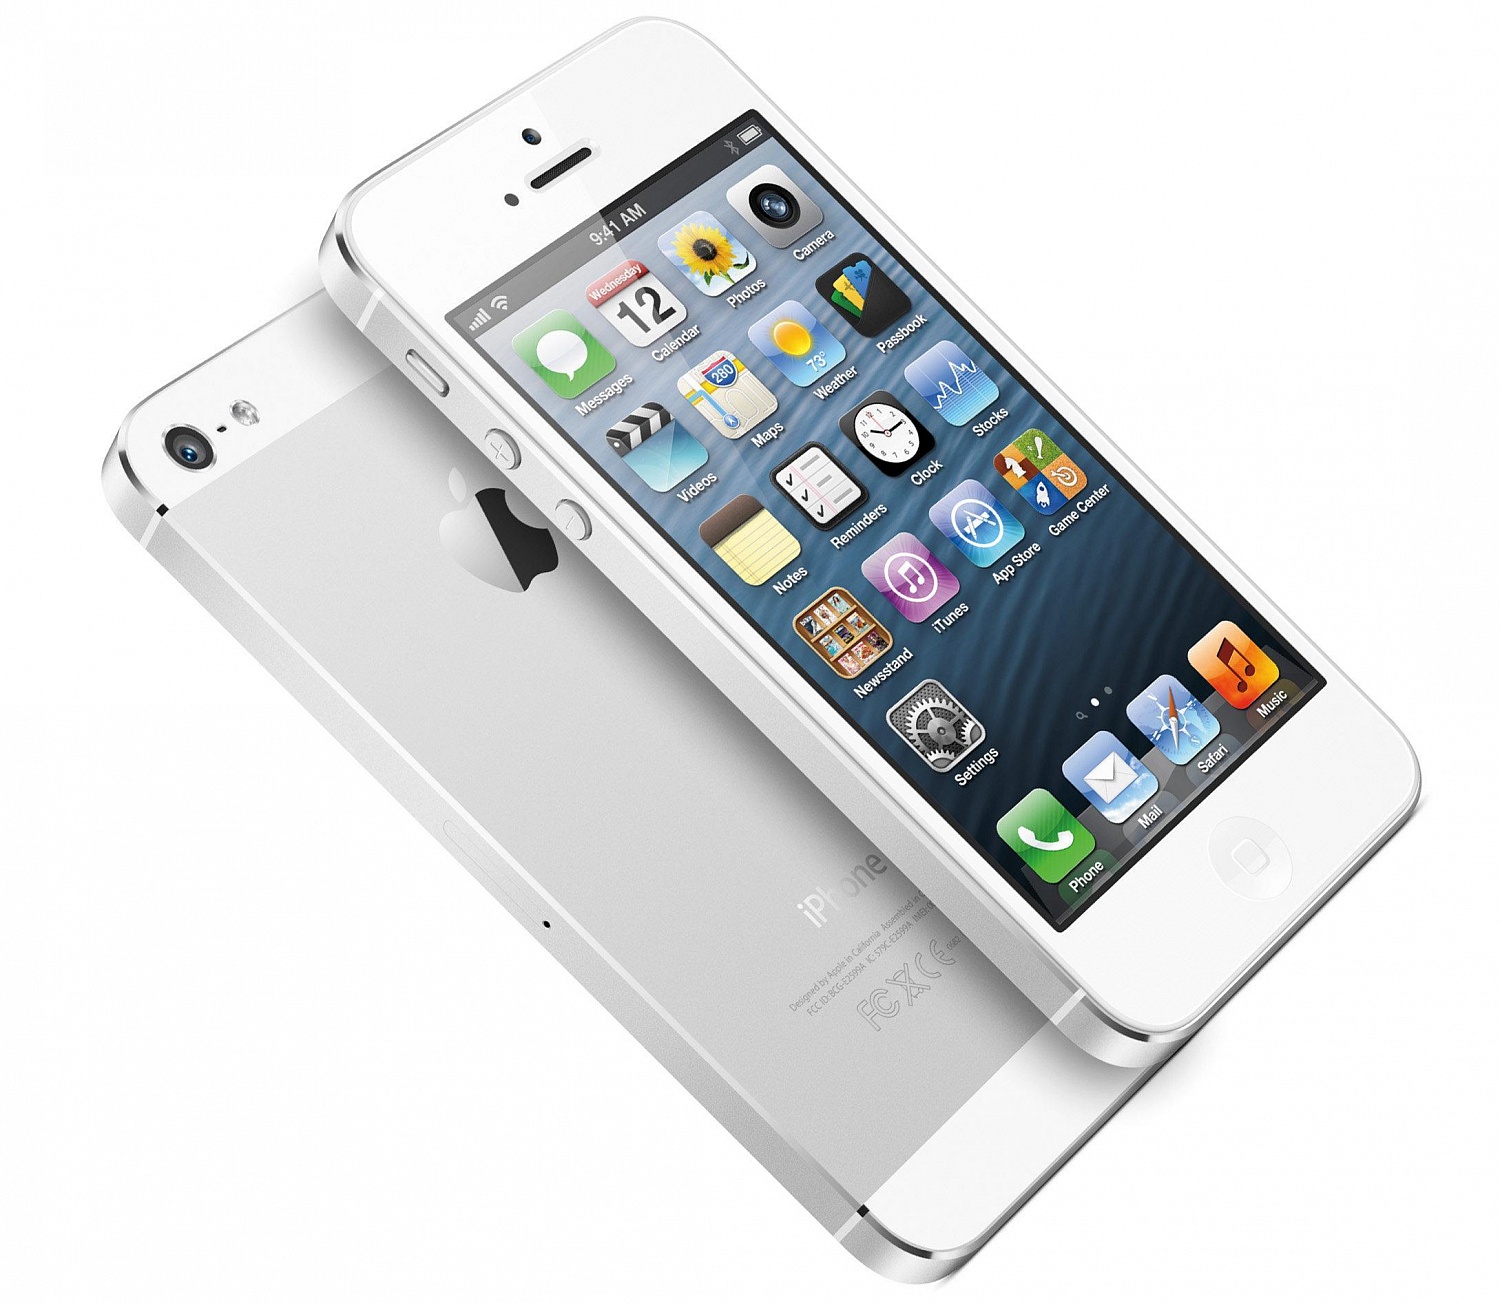 Foxconn выпускает полмиллиона iPhone 5s ежедневно, чтобы выполнить заказ Apple